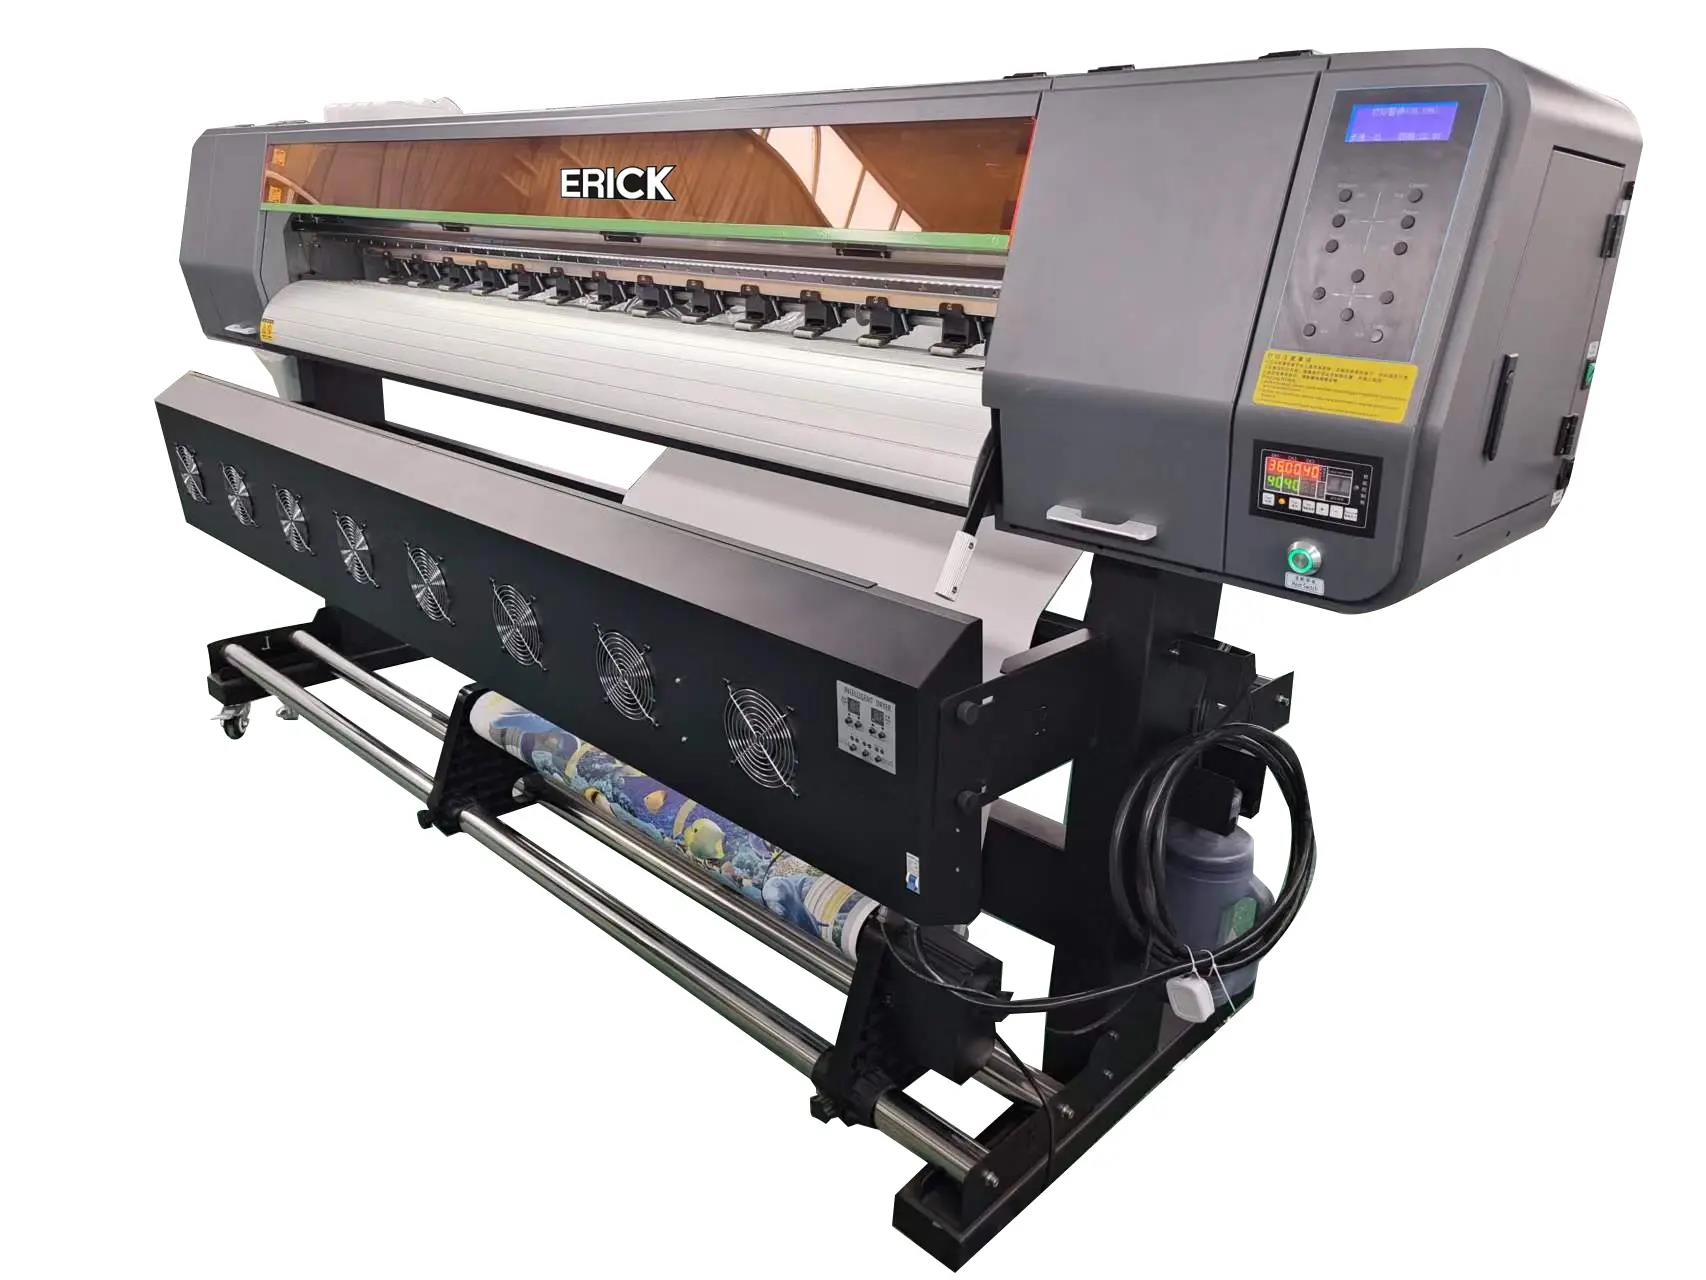 https://www.ailyuvprinter.com/oem-ep-i3200a1-eco-solvent-printer-for-vinyl-flex-printing-inkjet-plotter-1-8m-product/